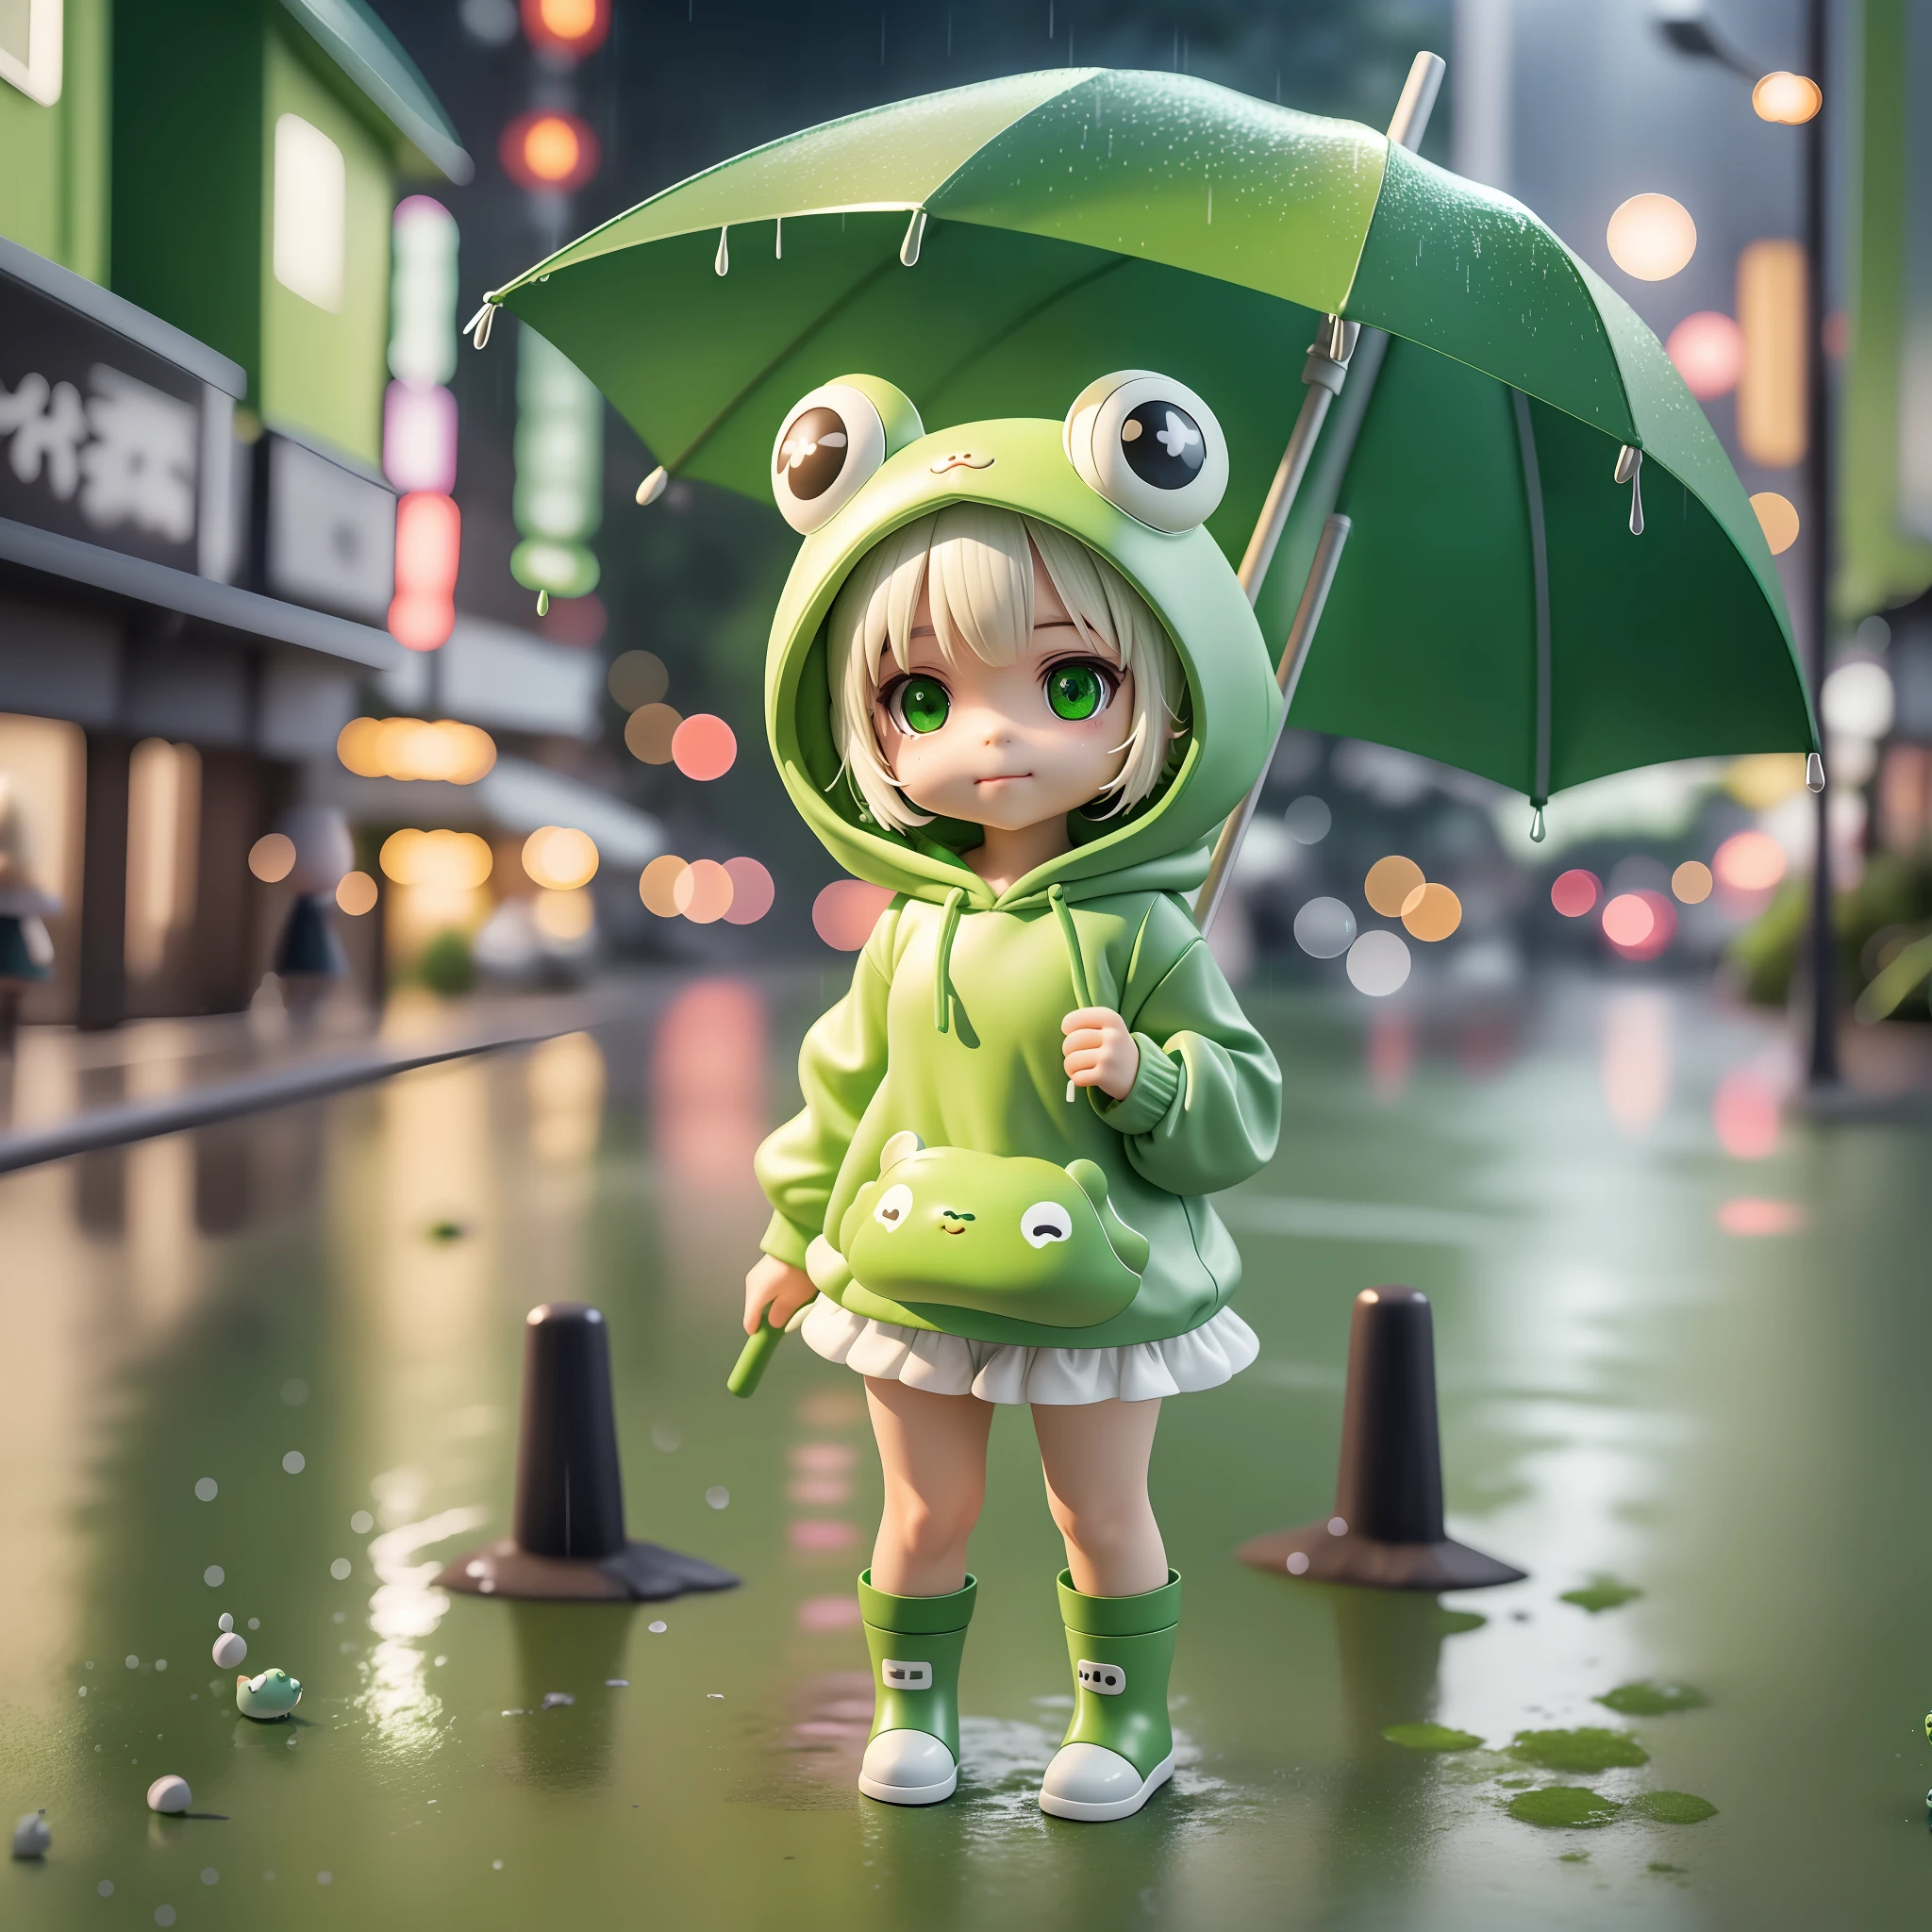 緑のカエルのパーカーを着たちびの女の子, ウンベレラカエルのアタイルを持つ, 降りしきる雨, 白のショートヘア, スミルキャラクター, 緑のブーツを履く, 高解像度, ブラインドボックス, 4D, 3D, ハードシャドウ, ハードライト, キュートでスモルな姿, 雨の東京の背景は夕方です, その他のNPC